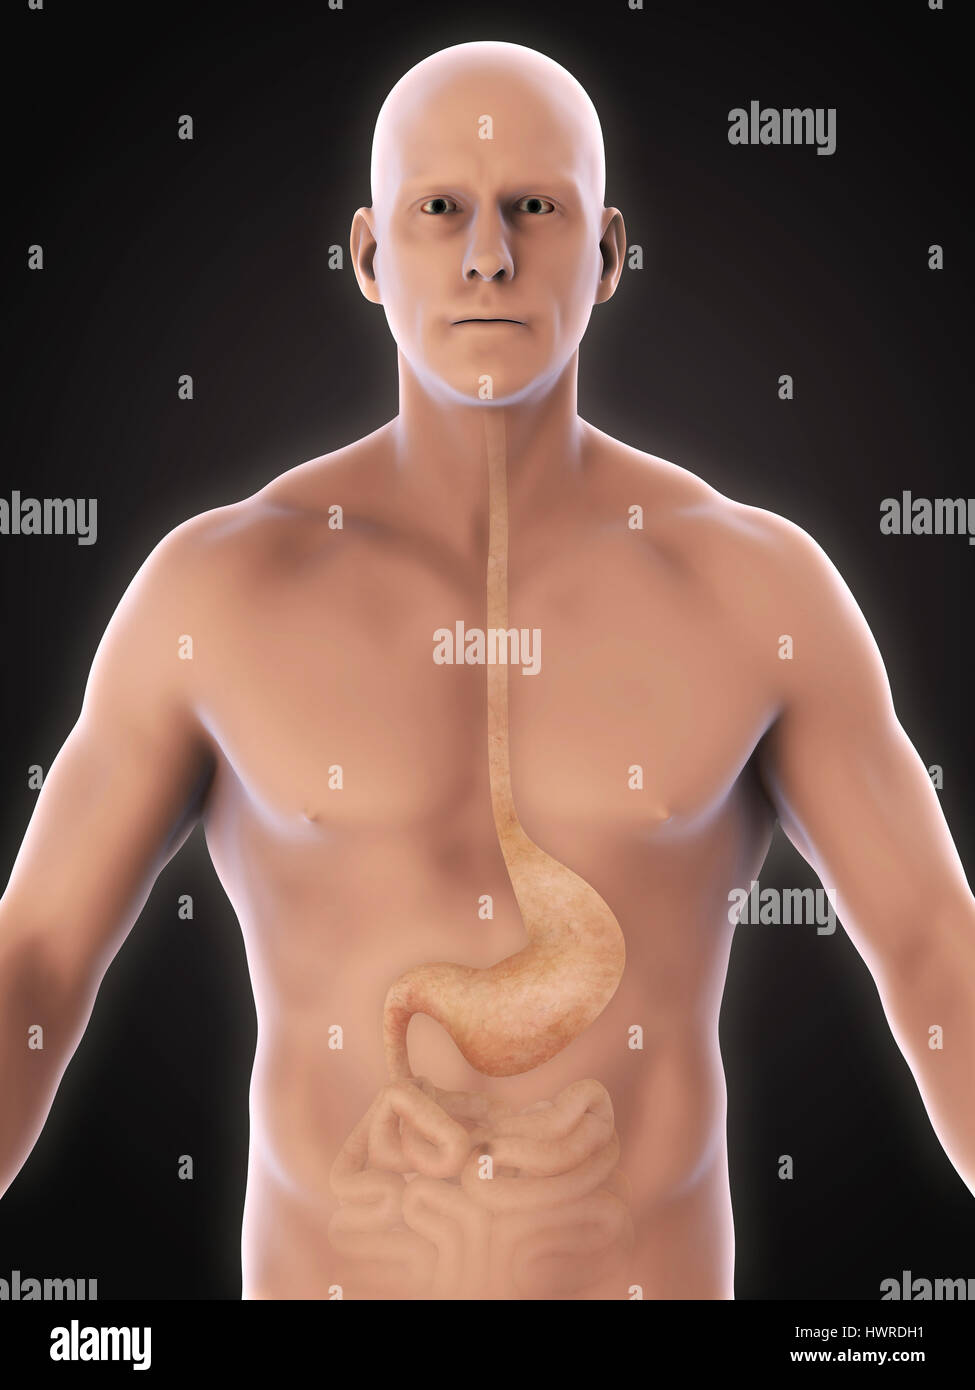 Anatomía del estómago humano Foto de stock